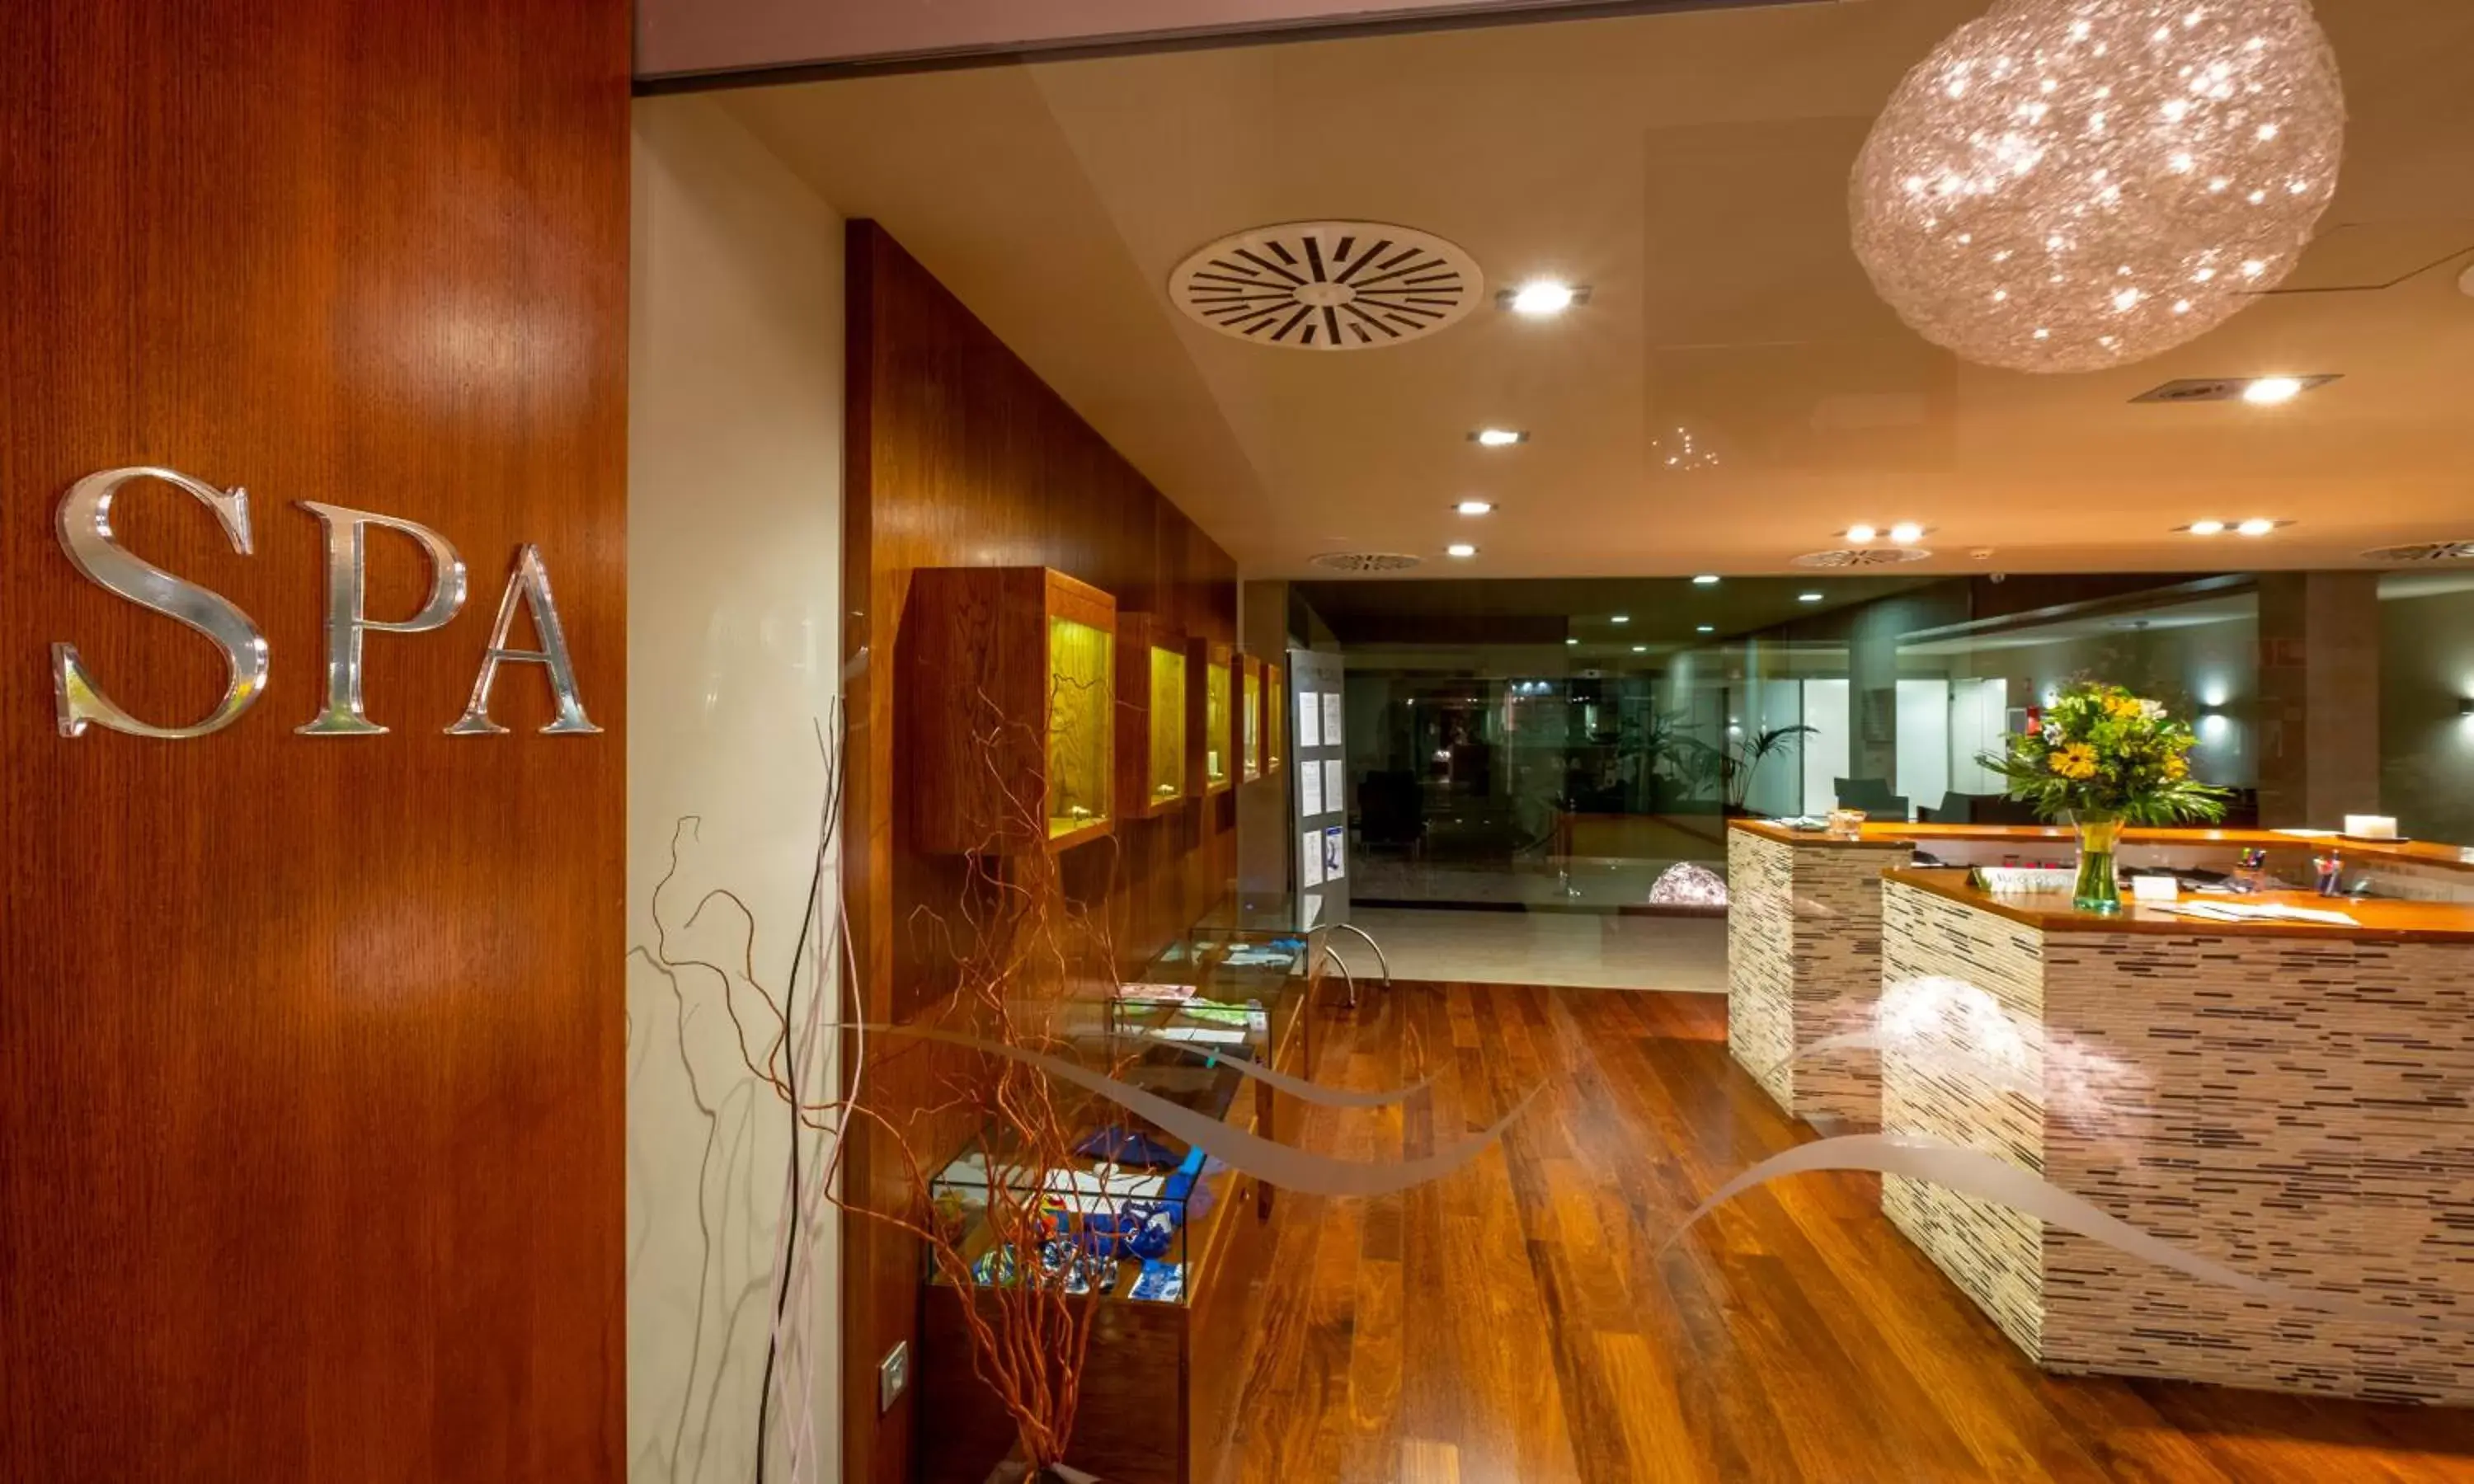 Spa and wellness centre/facilities, Lobby/Reception in Hotel Spa Attica21 Villalba